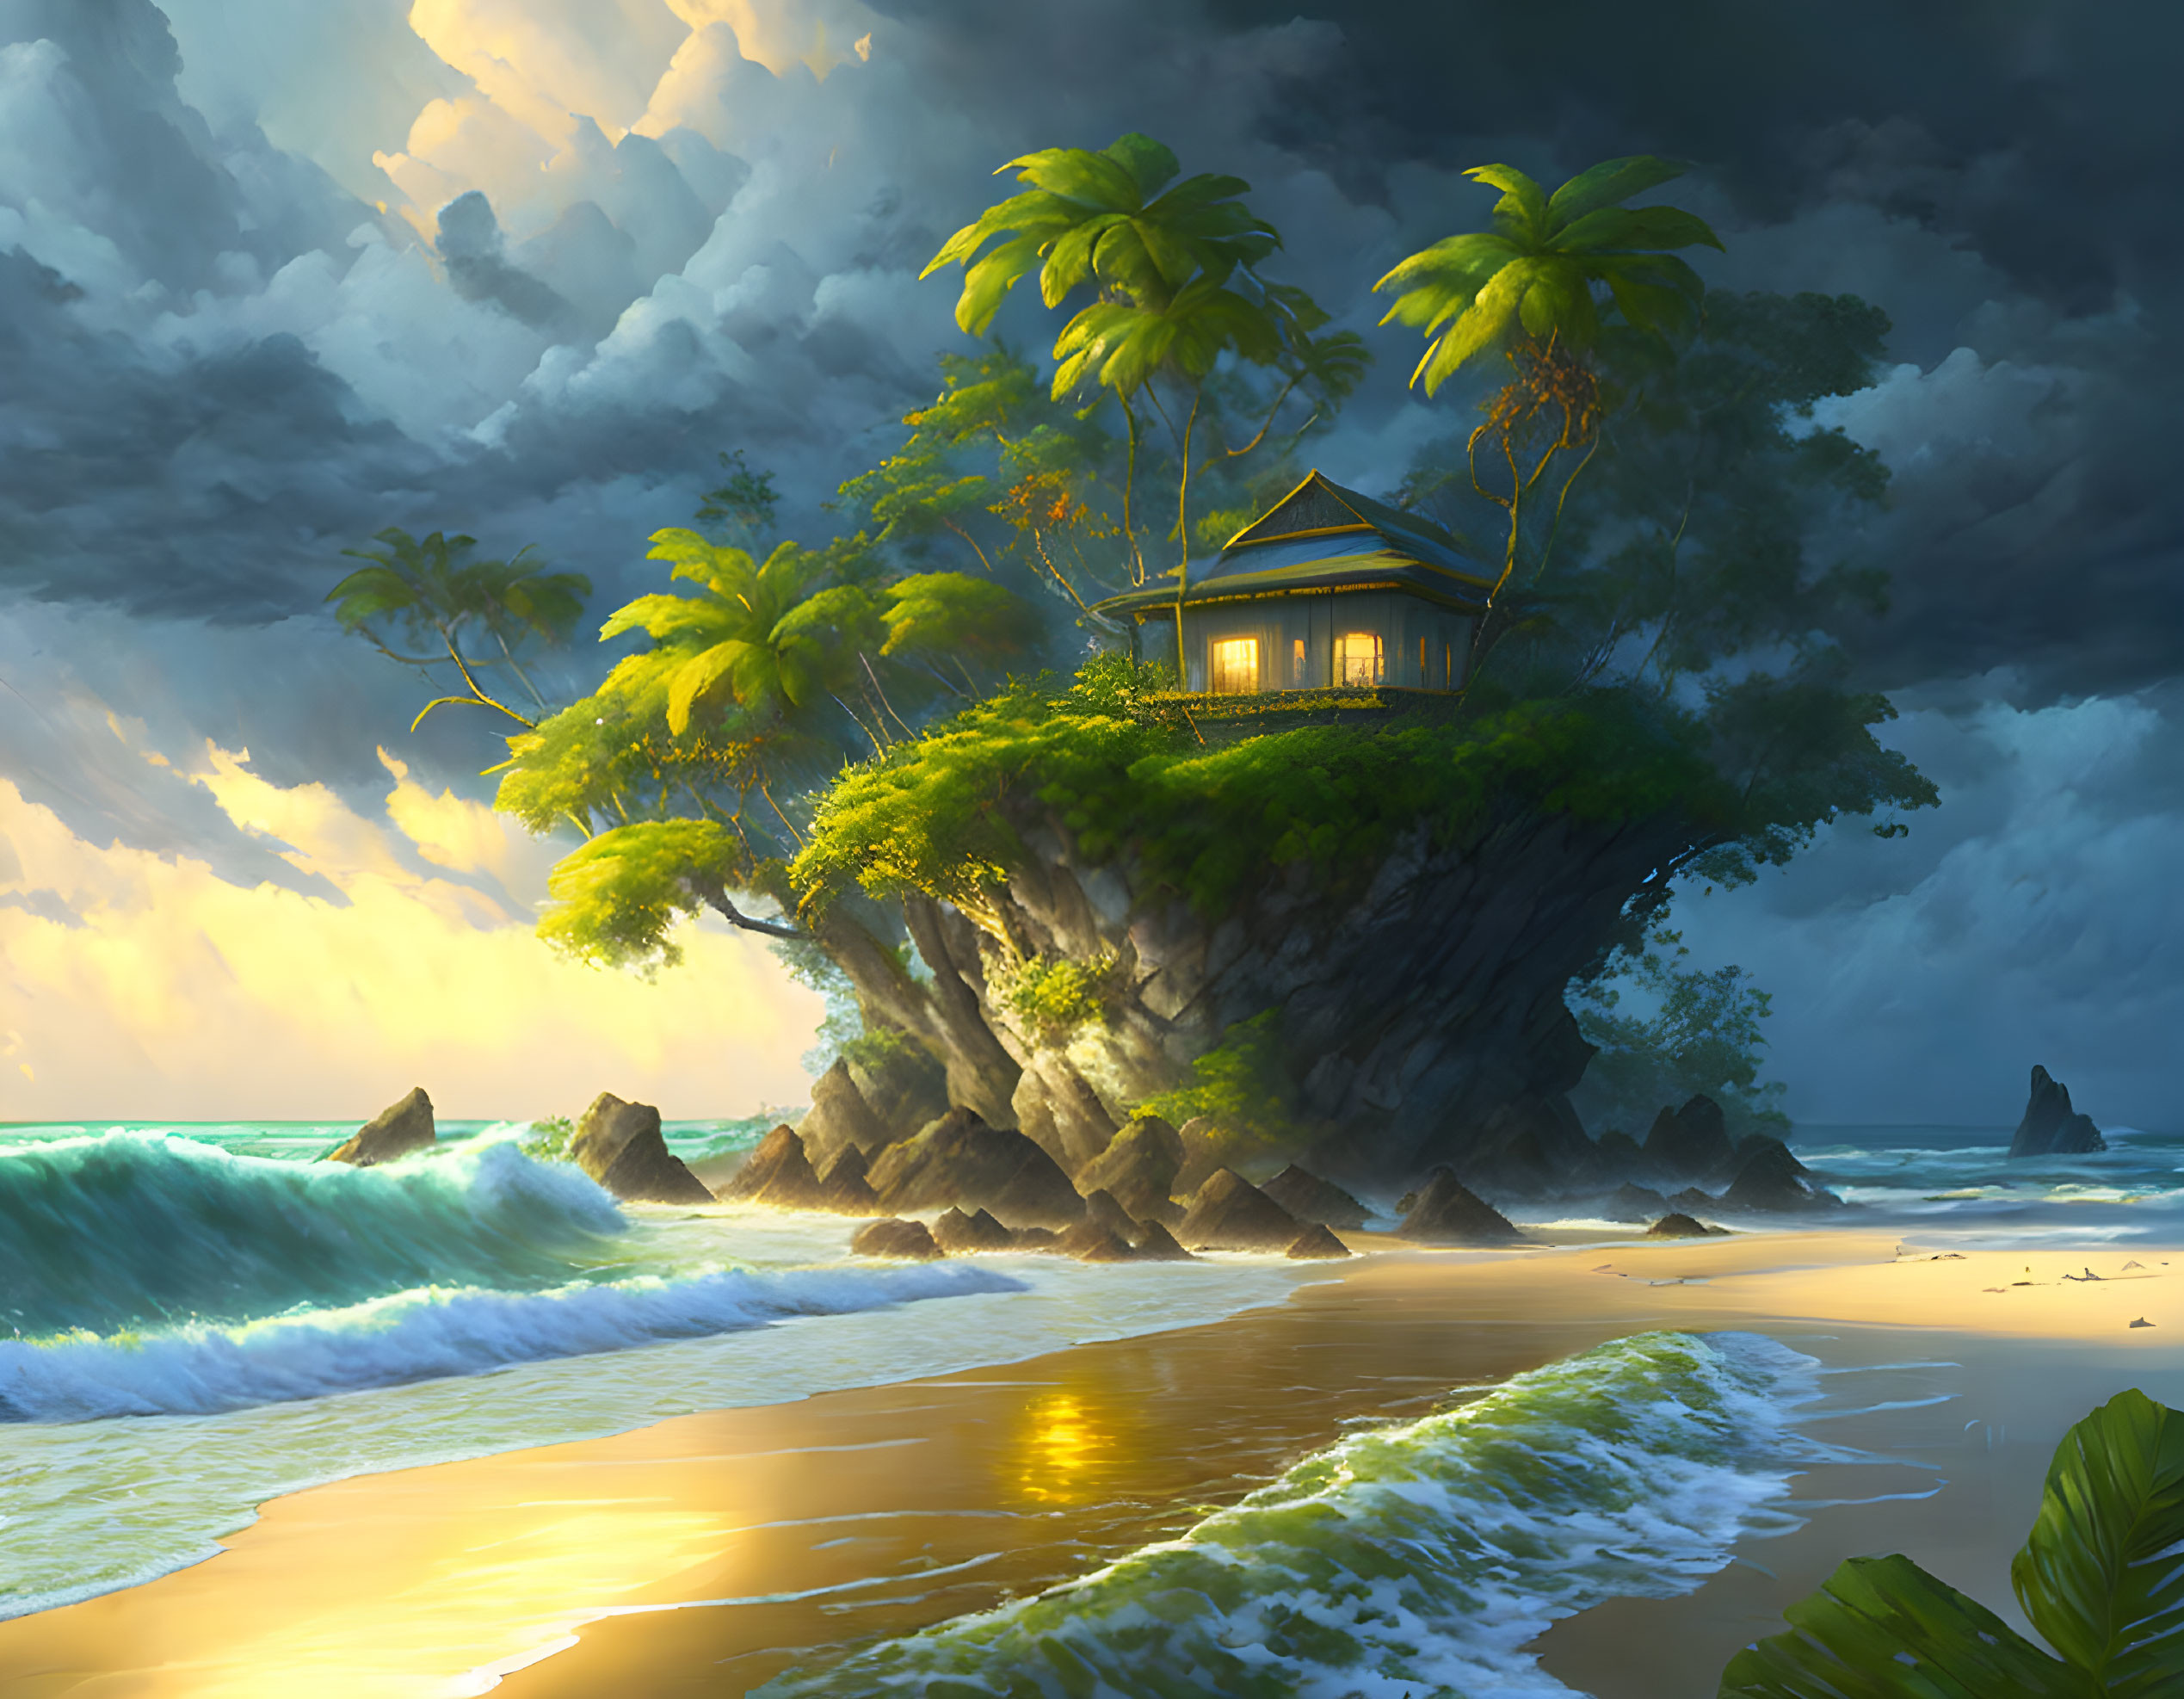   A beach house on a tropical rocky island